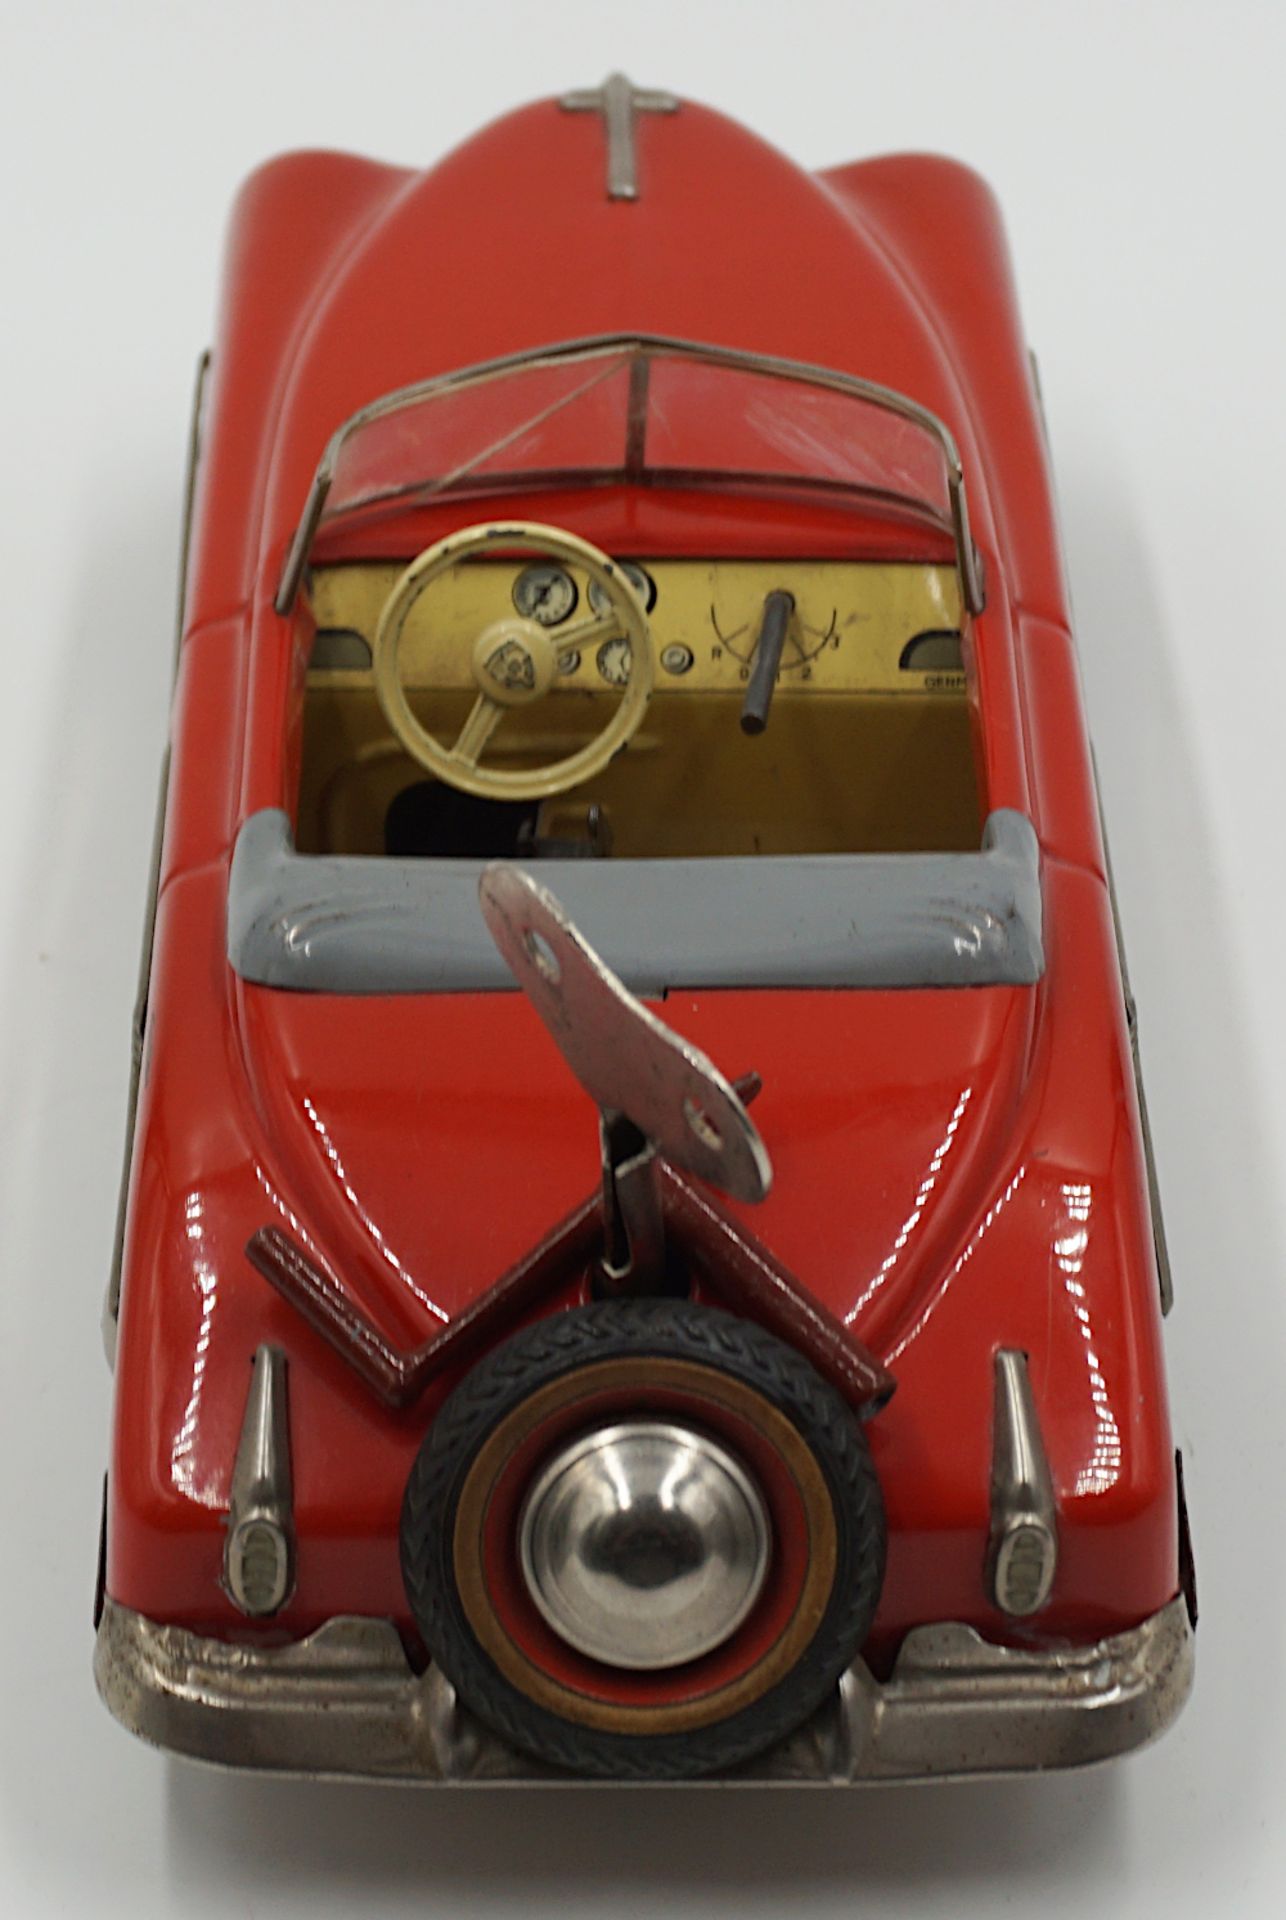 1 Aufziehauto DISTLER "Packard Cabrio" wohl 1950er Jahre, rot - Bild 4 aus 5